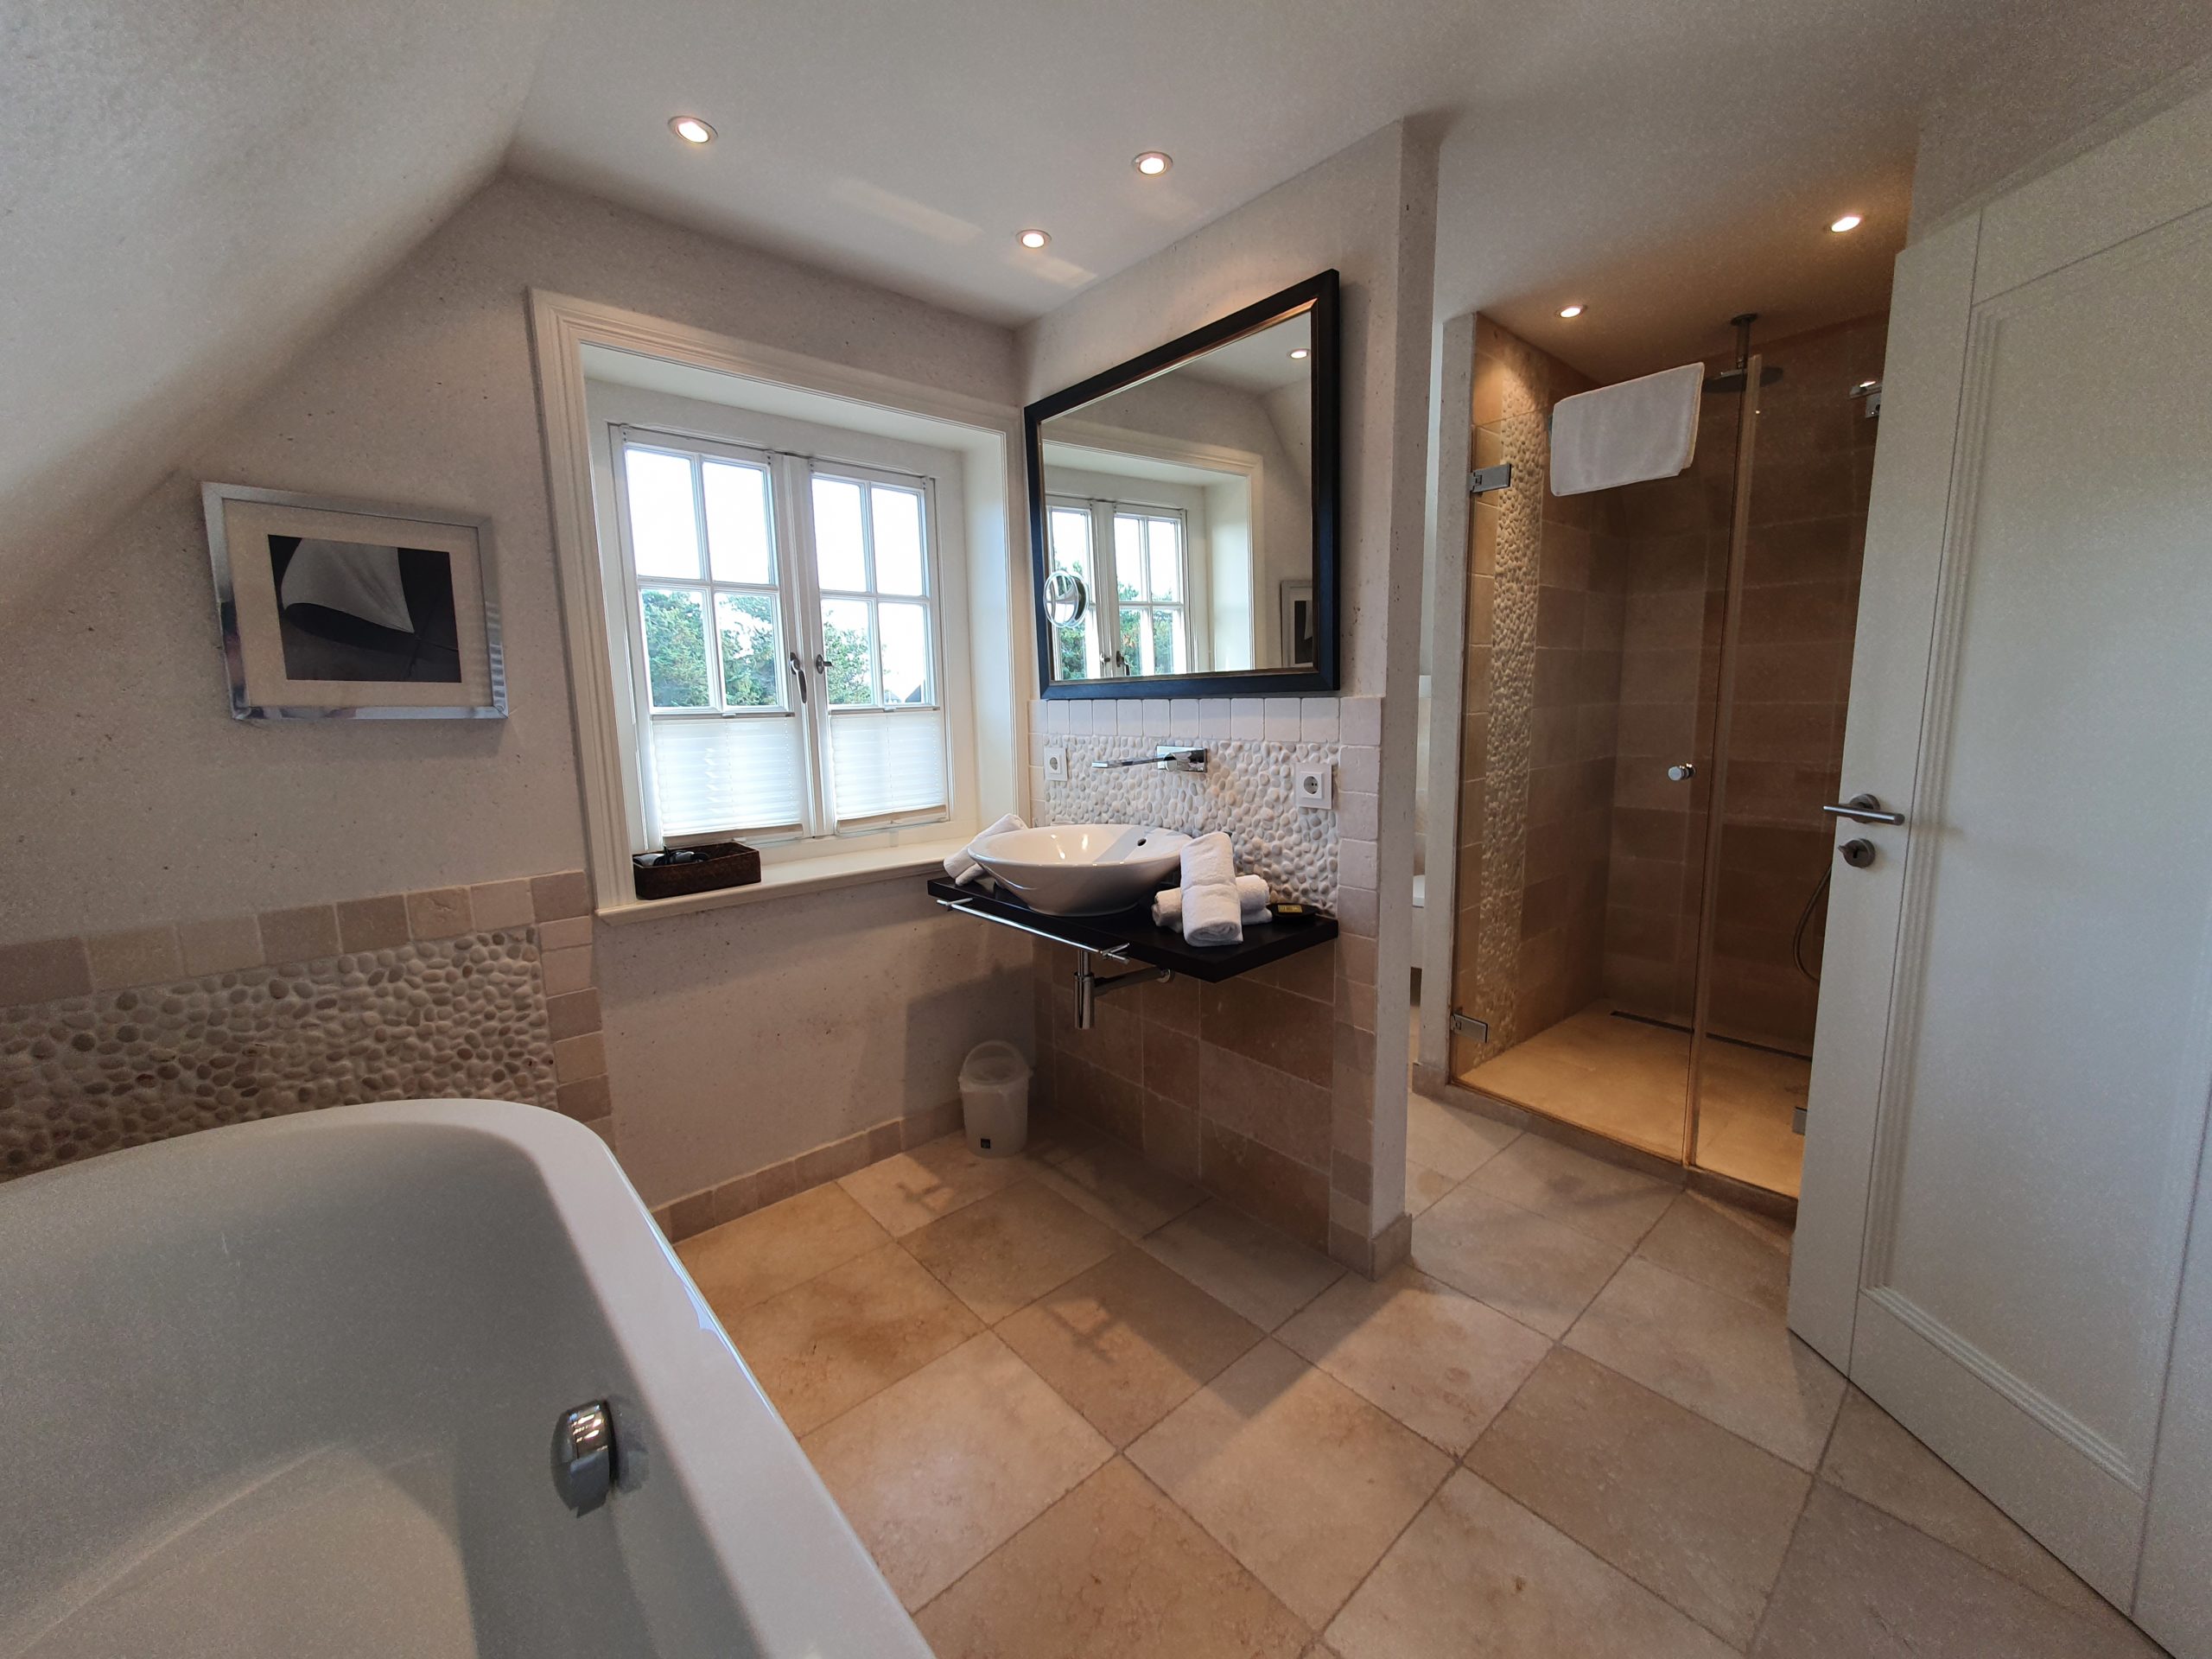 Modernes Bad mit großer Dusche in Sylt Hotel Duene